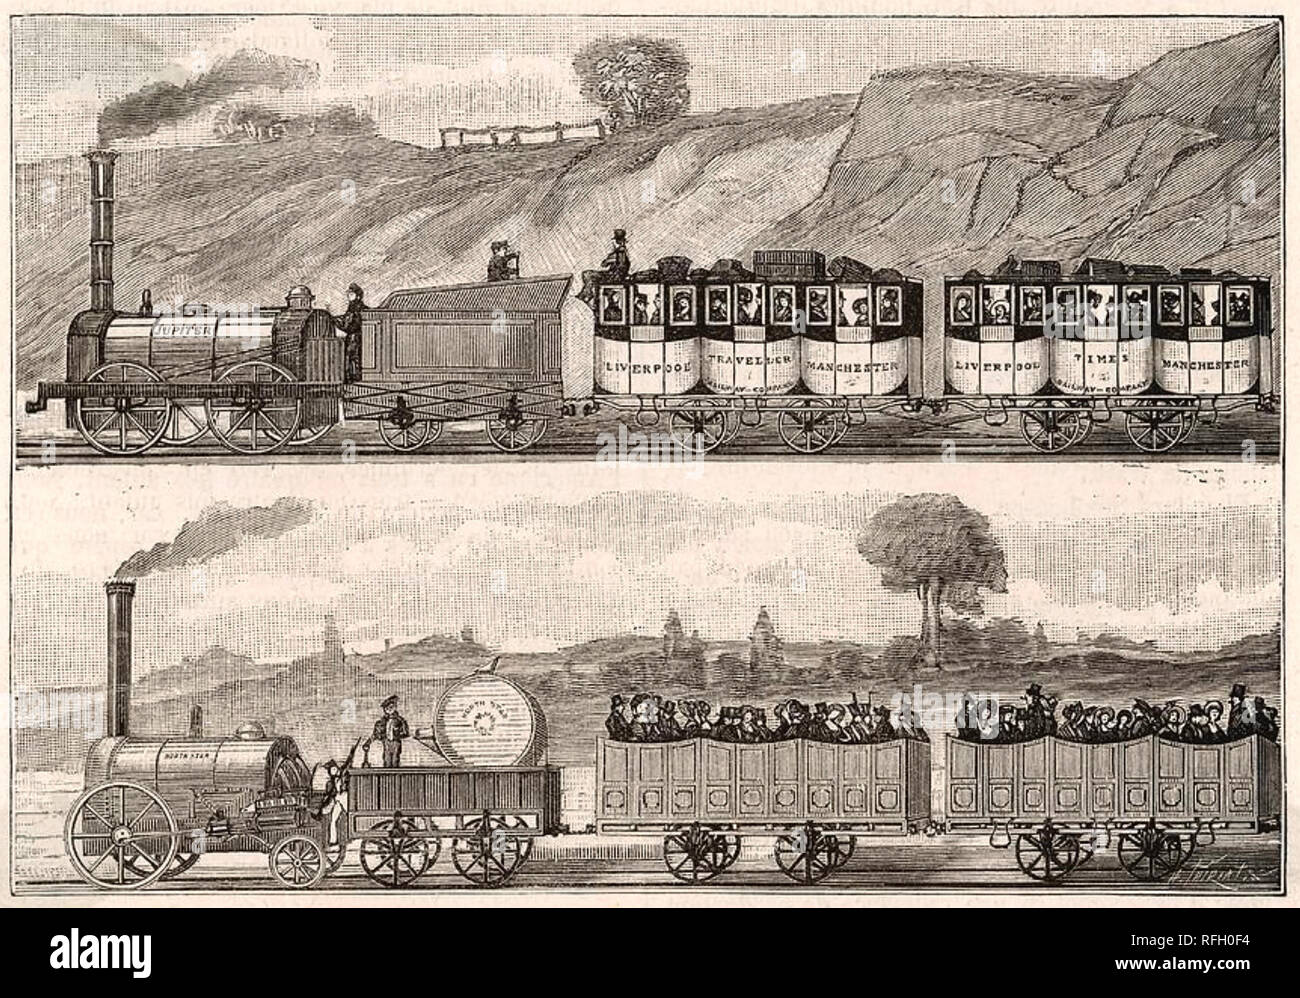 LIVERPOOL und Manchester Railway in einem 1830 Gravur Stockfoto